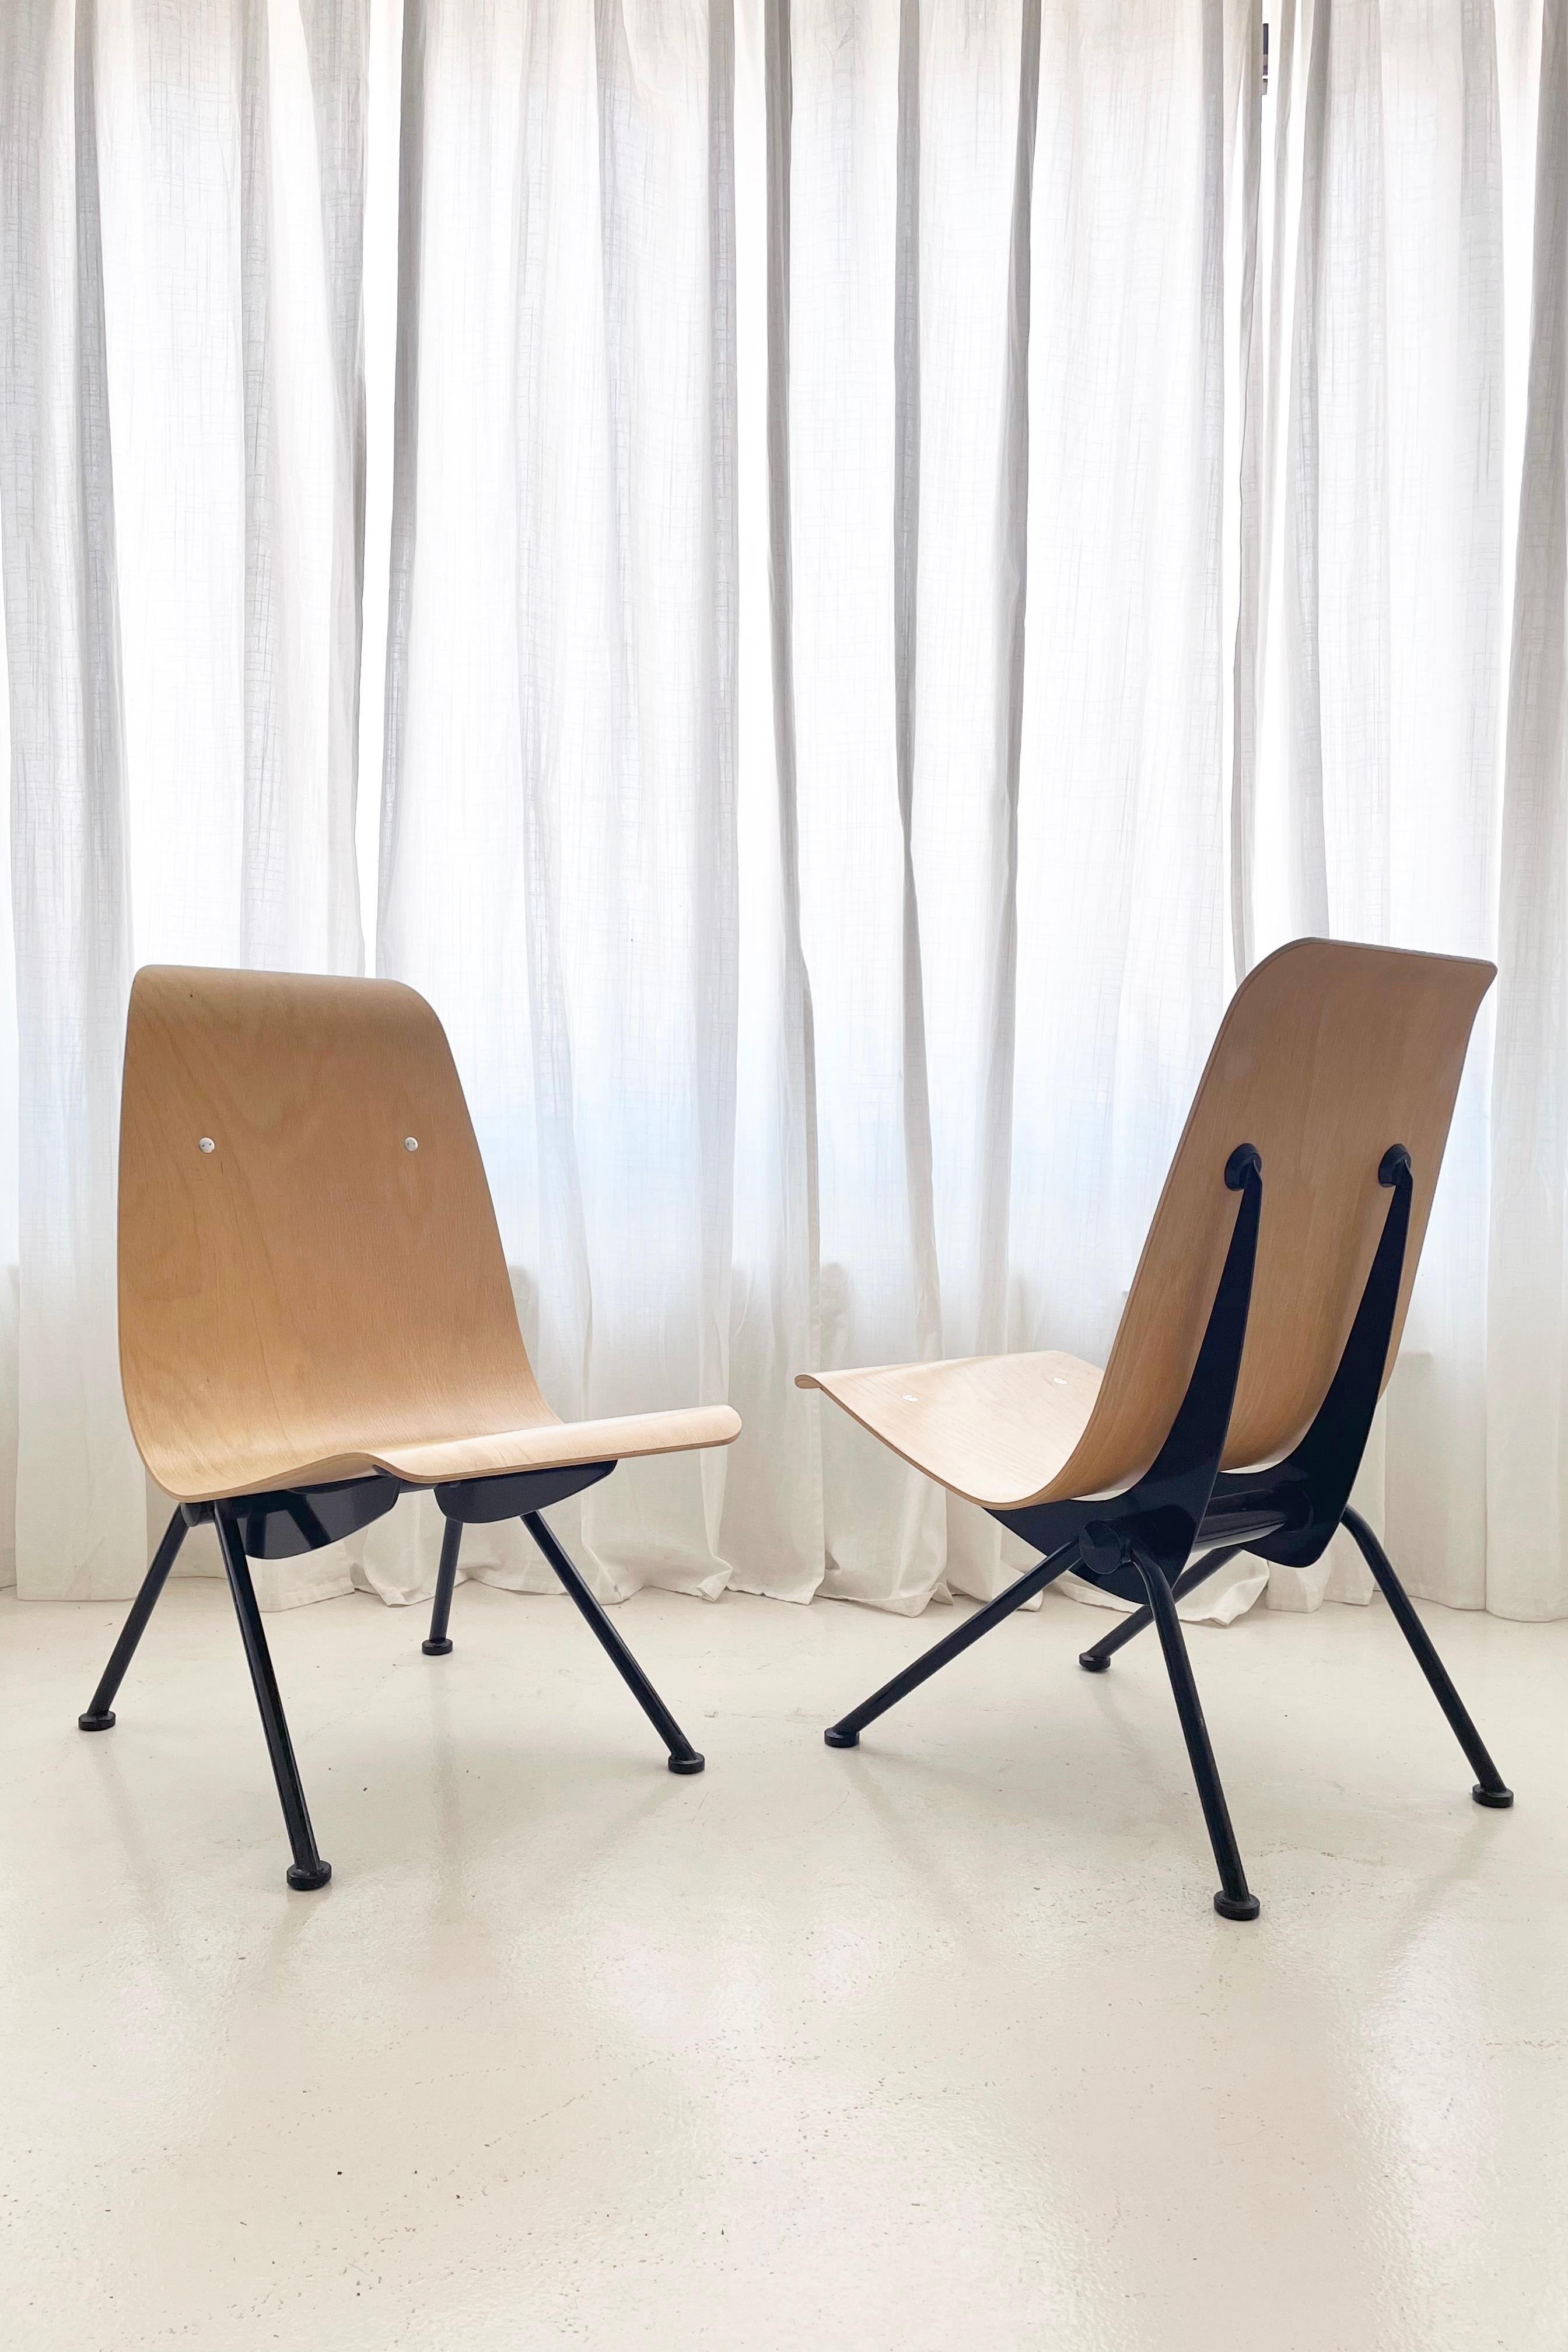 Bei diesen Stühlen handelt es sich um ein sehr begehrtes Set von Antony Chairs, die ursprünglich 1950 von dem französischen Architekten Jean Prouvé entworfen und 2002 von Vitra USA im Namen der Familie Prouvé in Lizenz herausgegeben wurden.

Die